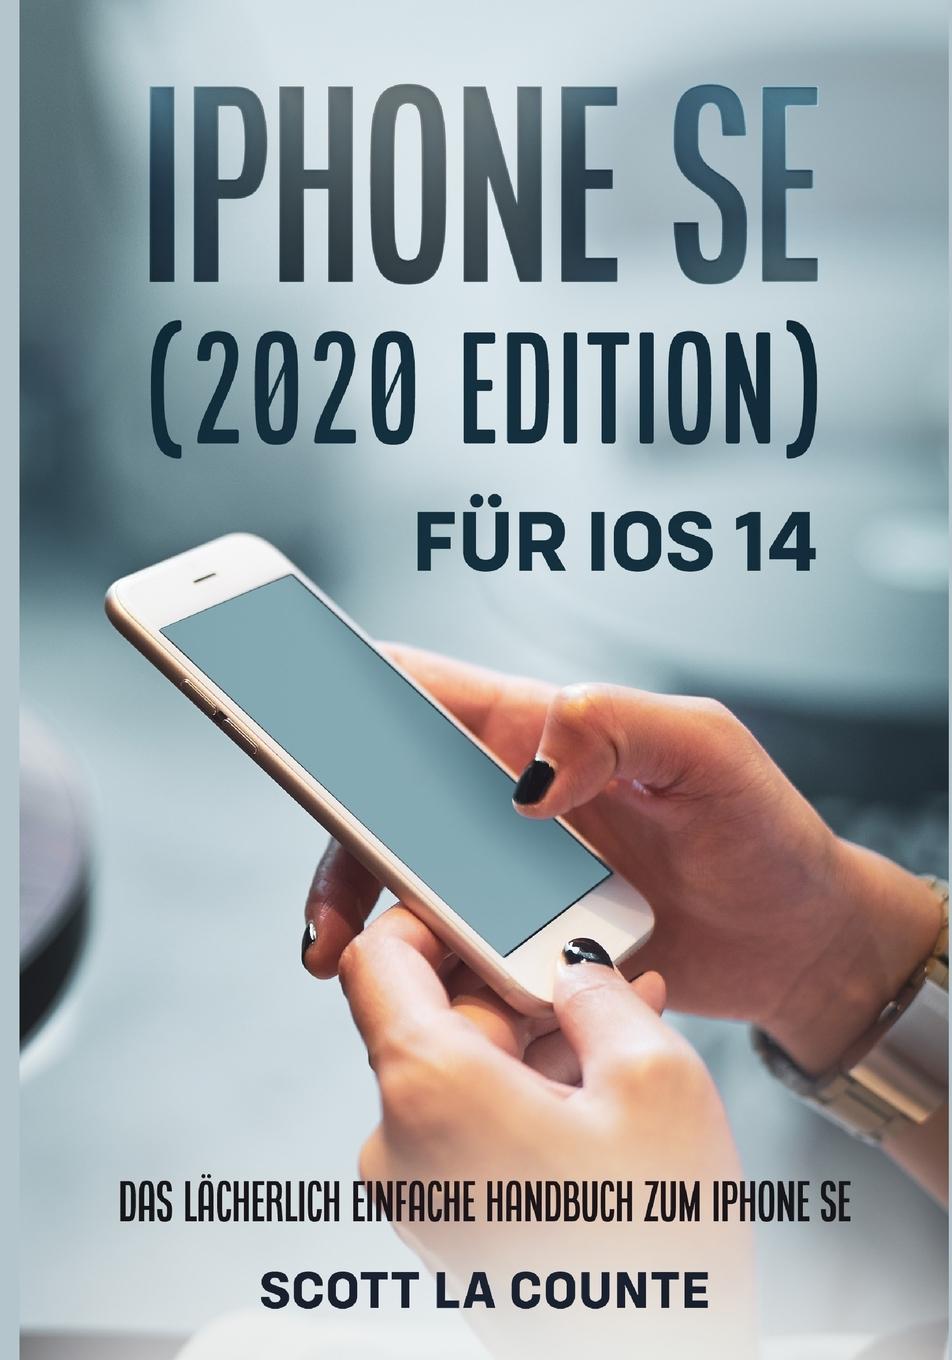 Carte iPhone SE (2020 Edition) Fur iOS 14 